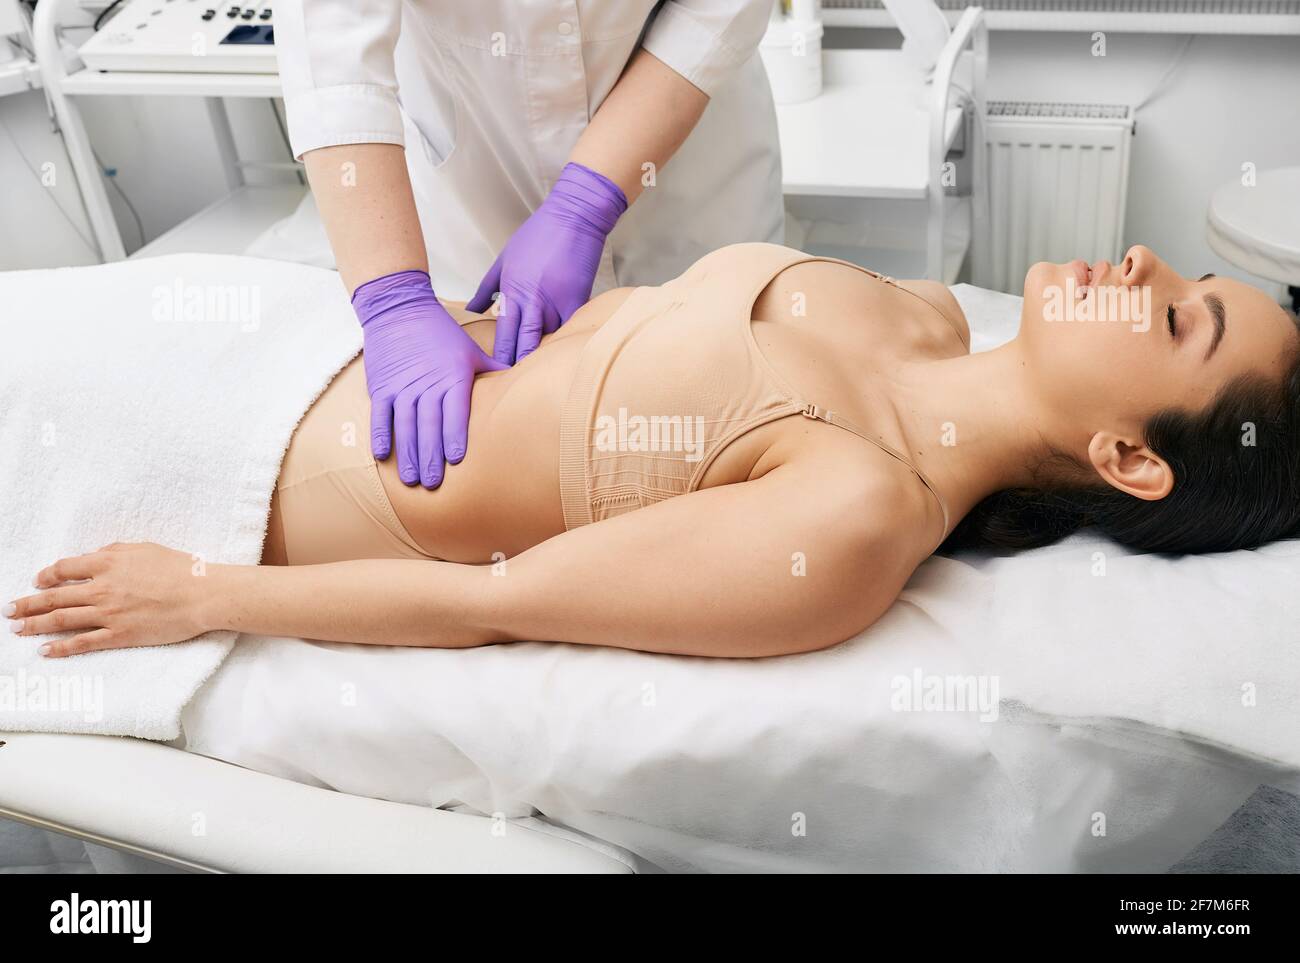 examen médical. médecin faisant le bilan préventif d'un abdomen féminin pour l'examen des organes internes de la femme Banque D'Images